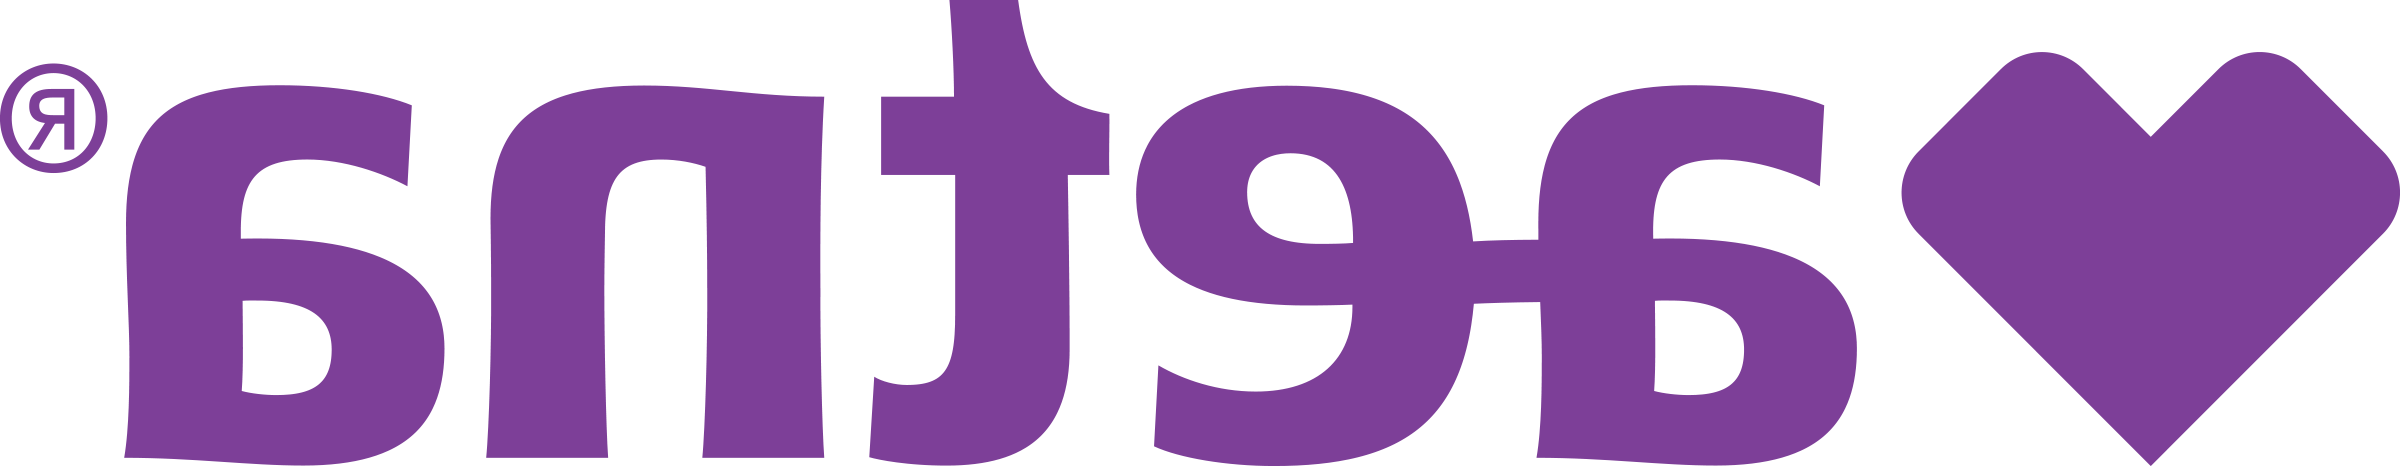 Aetna logo (NY)